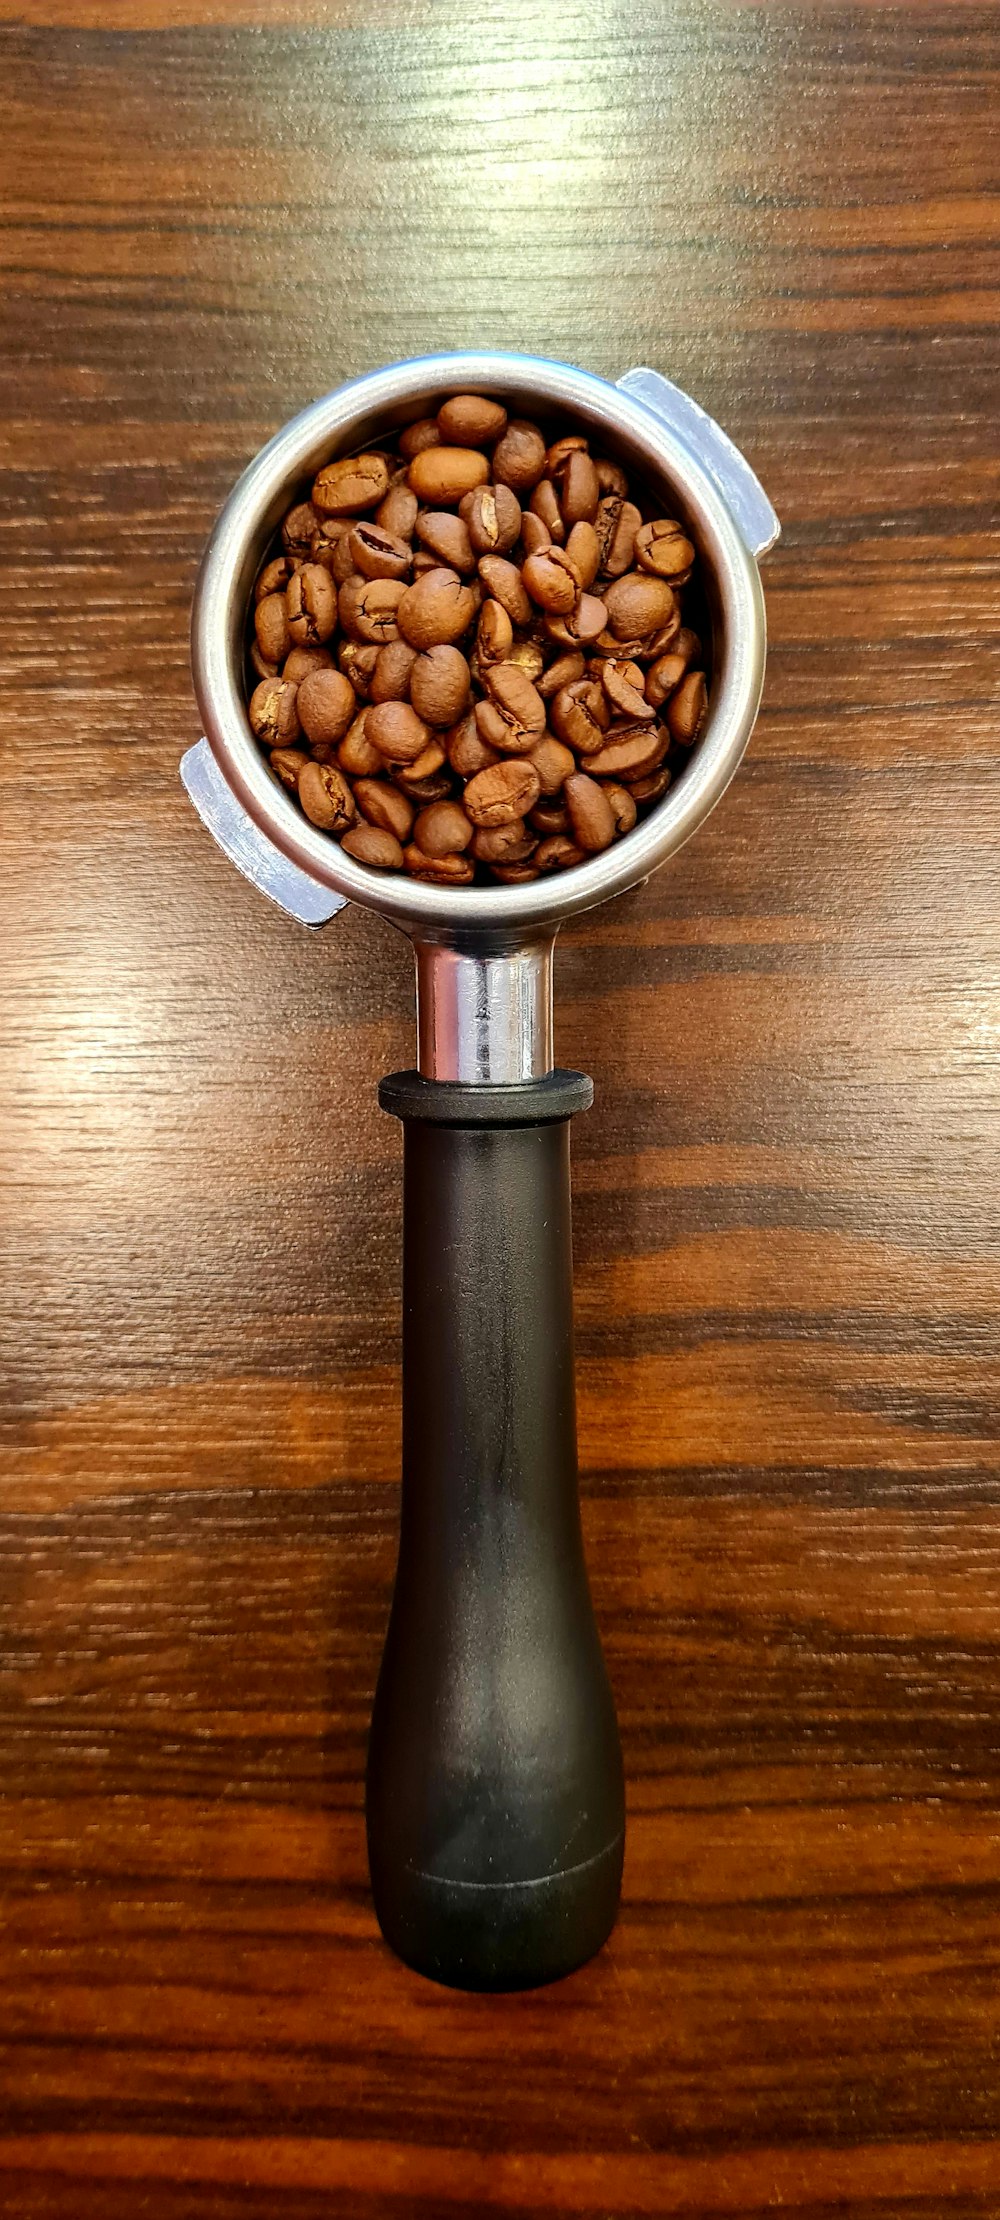 나무 테이블 위에 커피 원두를 채운 금속 컵